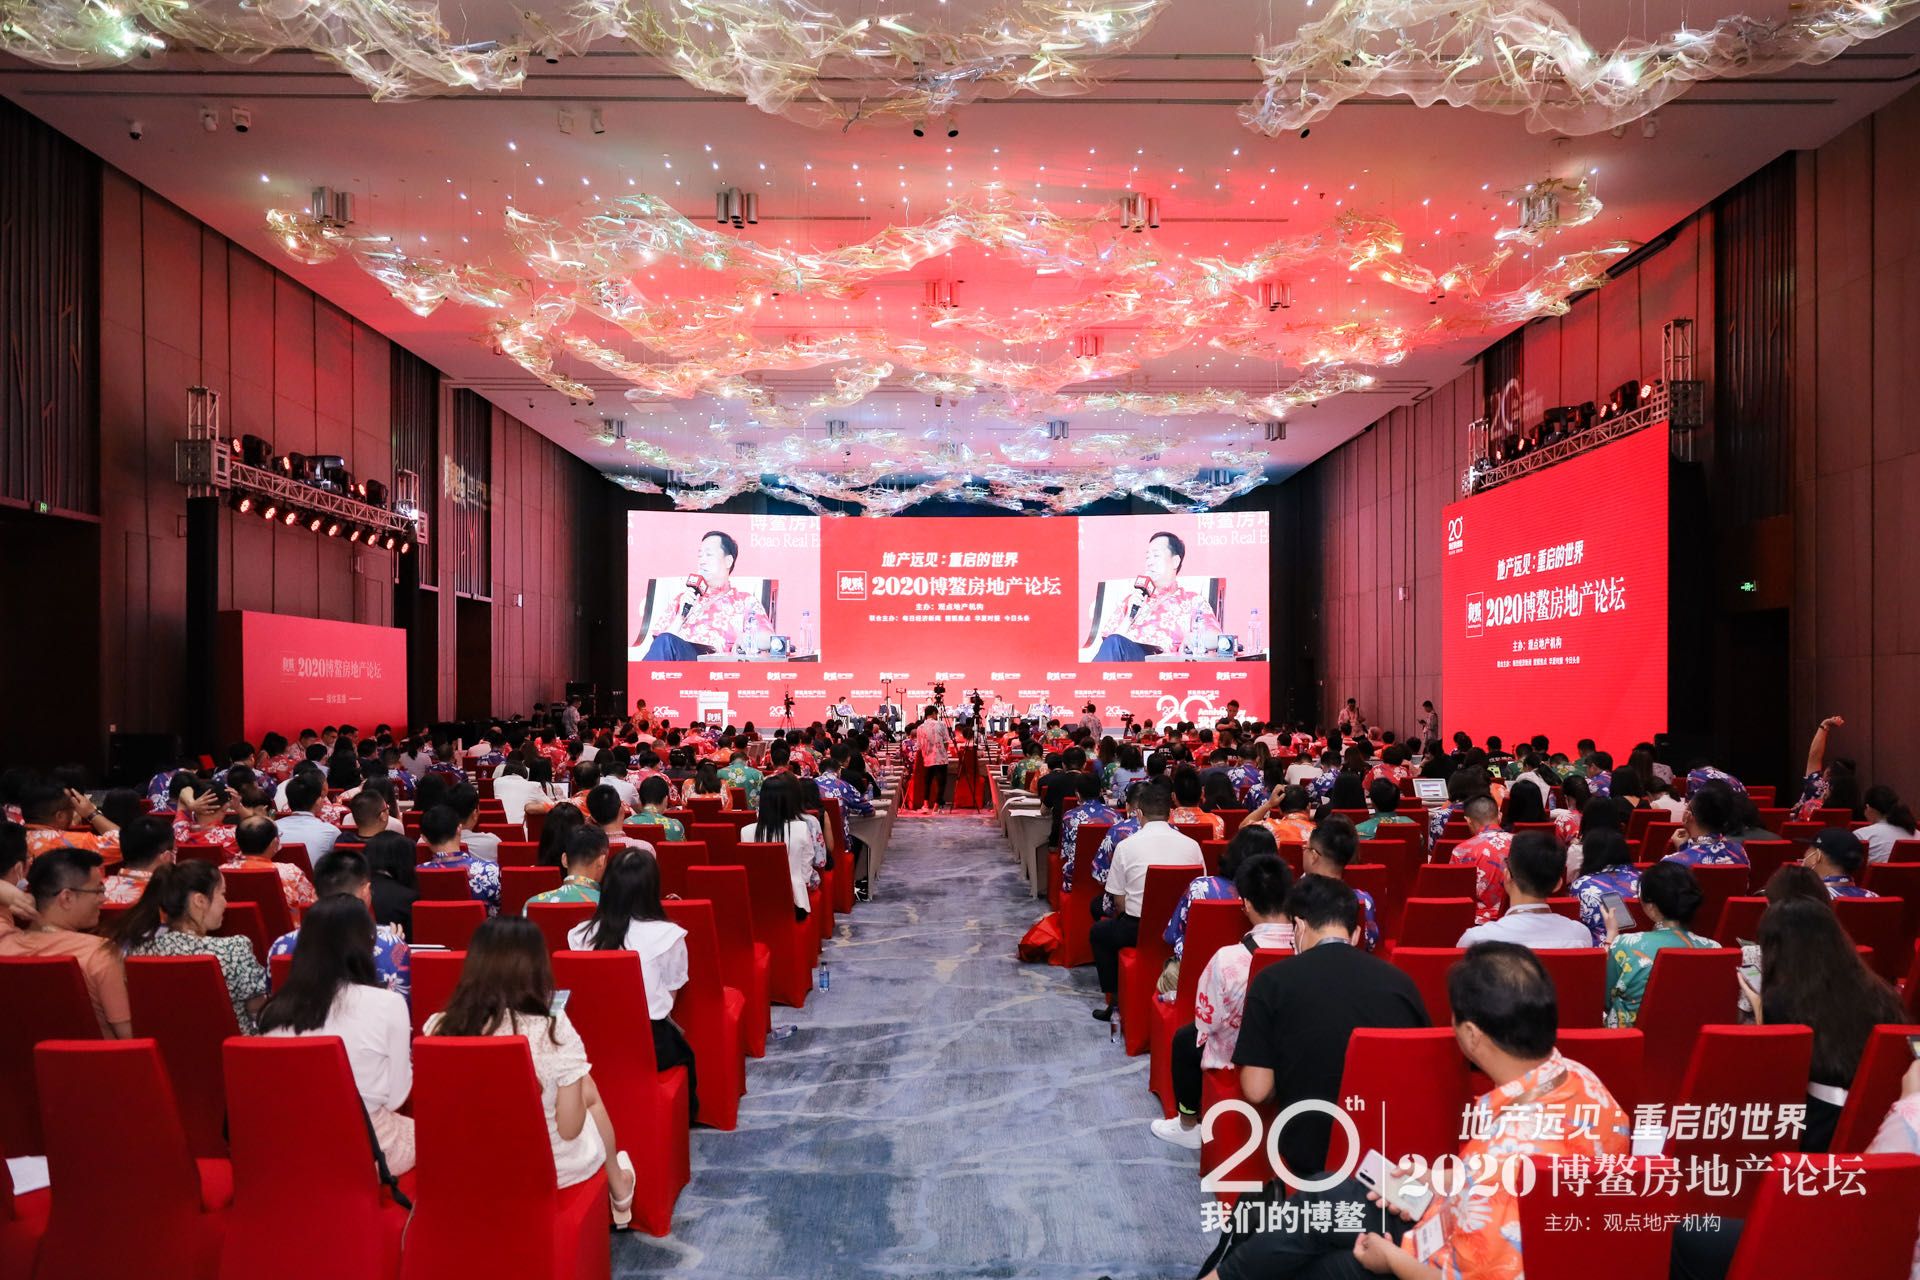 星河产业荣获“中国年度影响力产城发展榜单”第八名